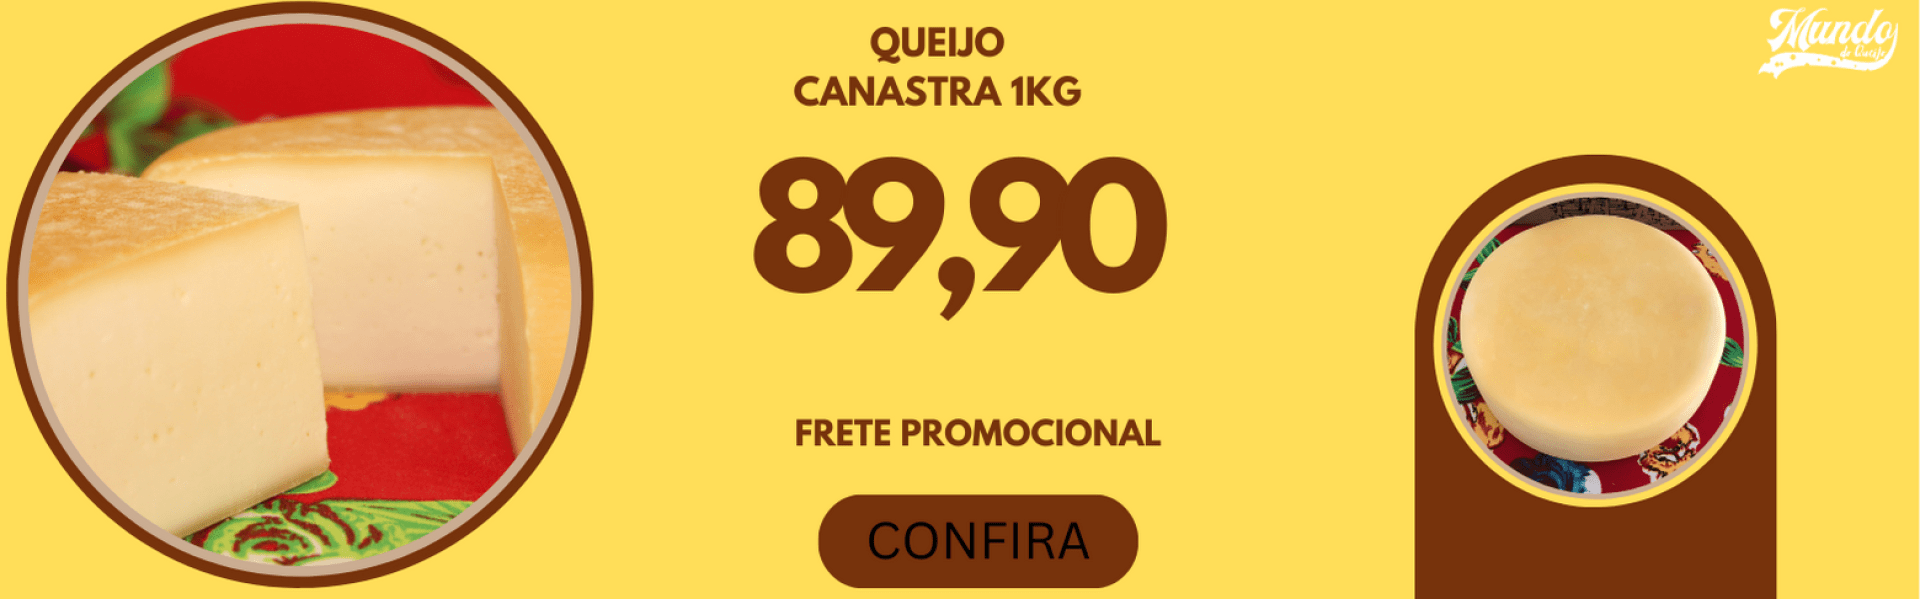 QUEIJO CANASTRA 89,90